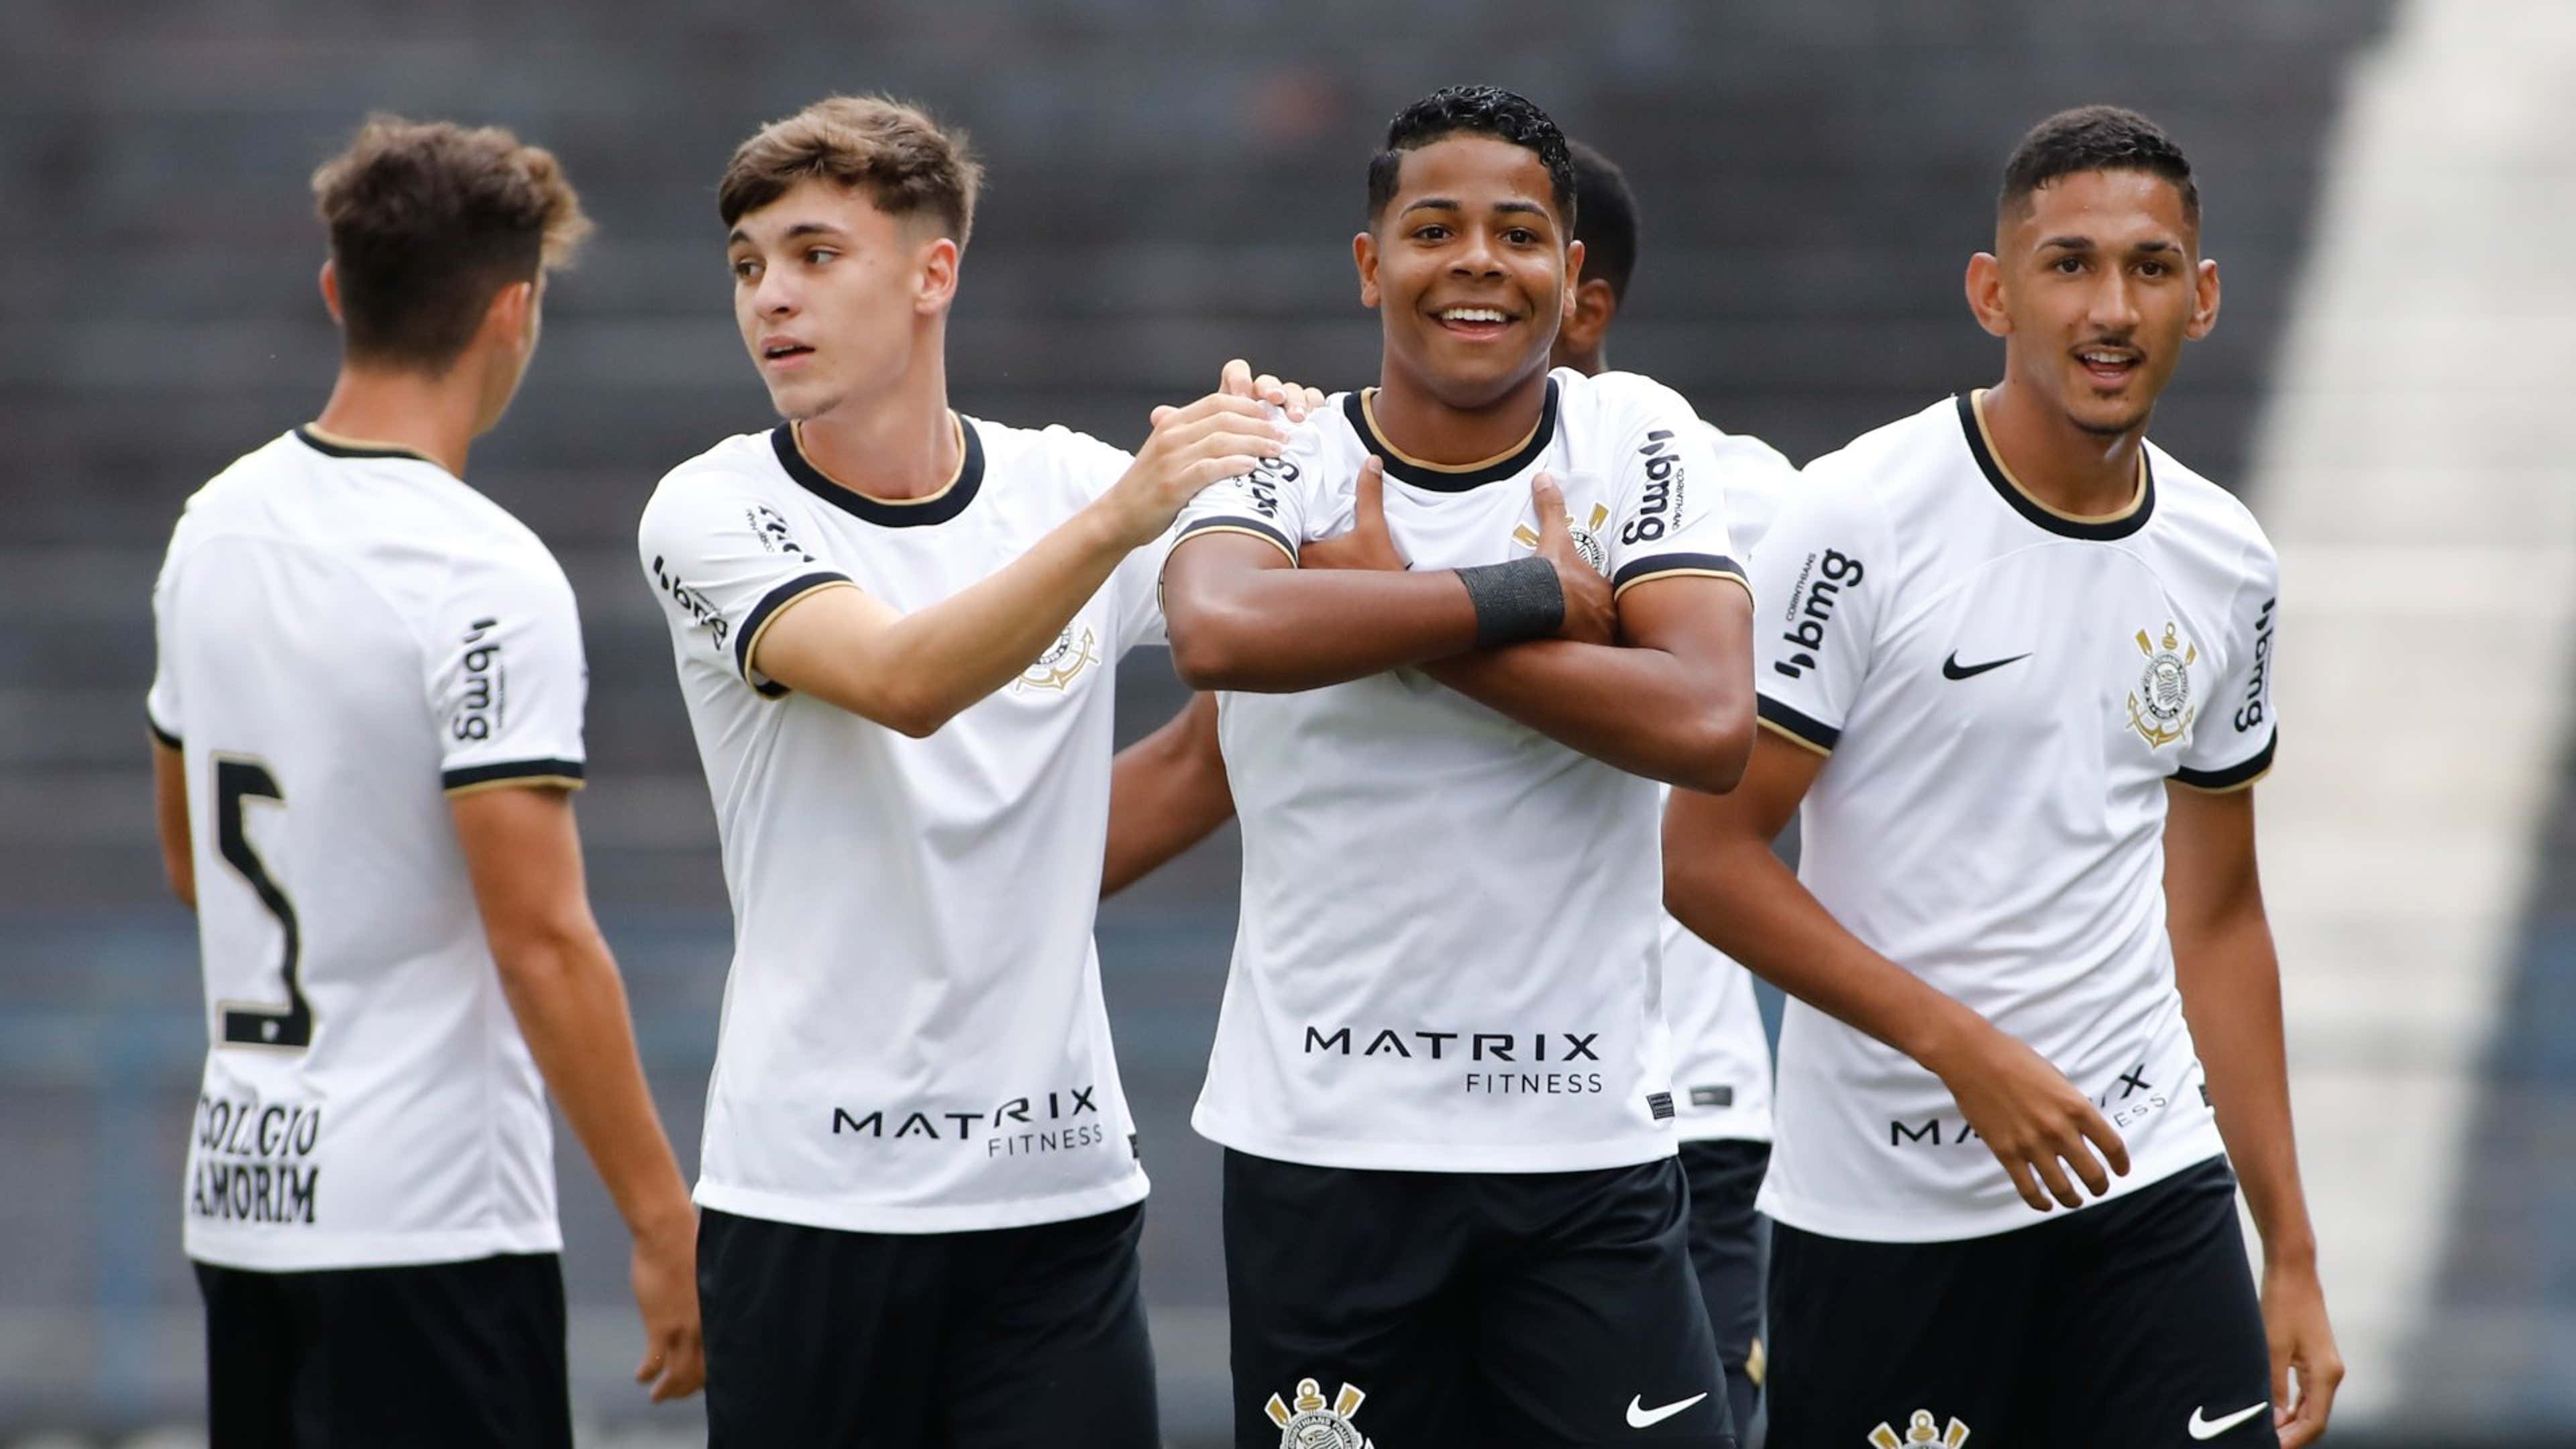 Live pré-jogo: Corinthians x Palmeiras - Campeonato Paulista 2020